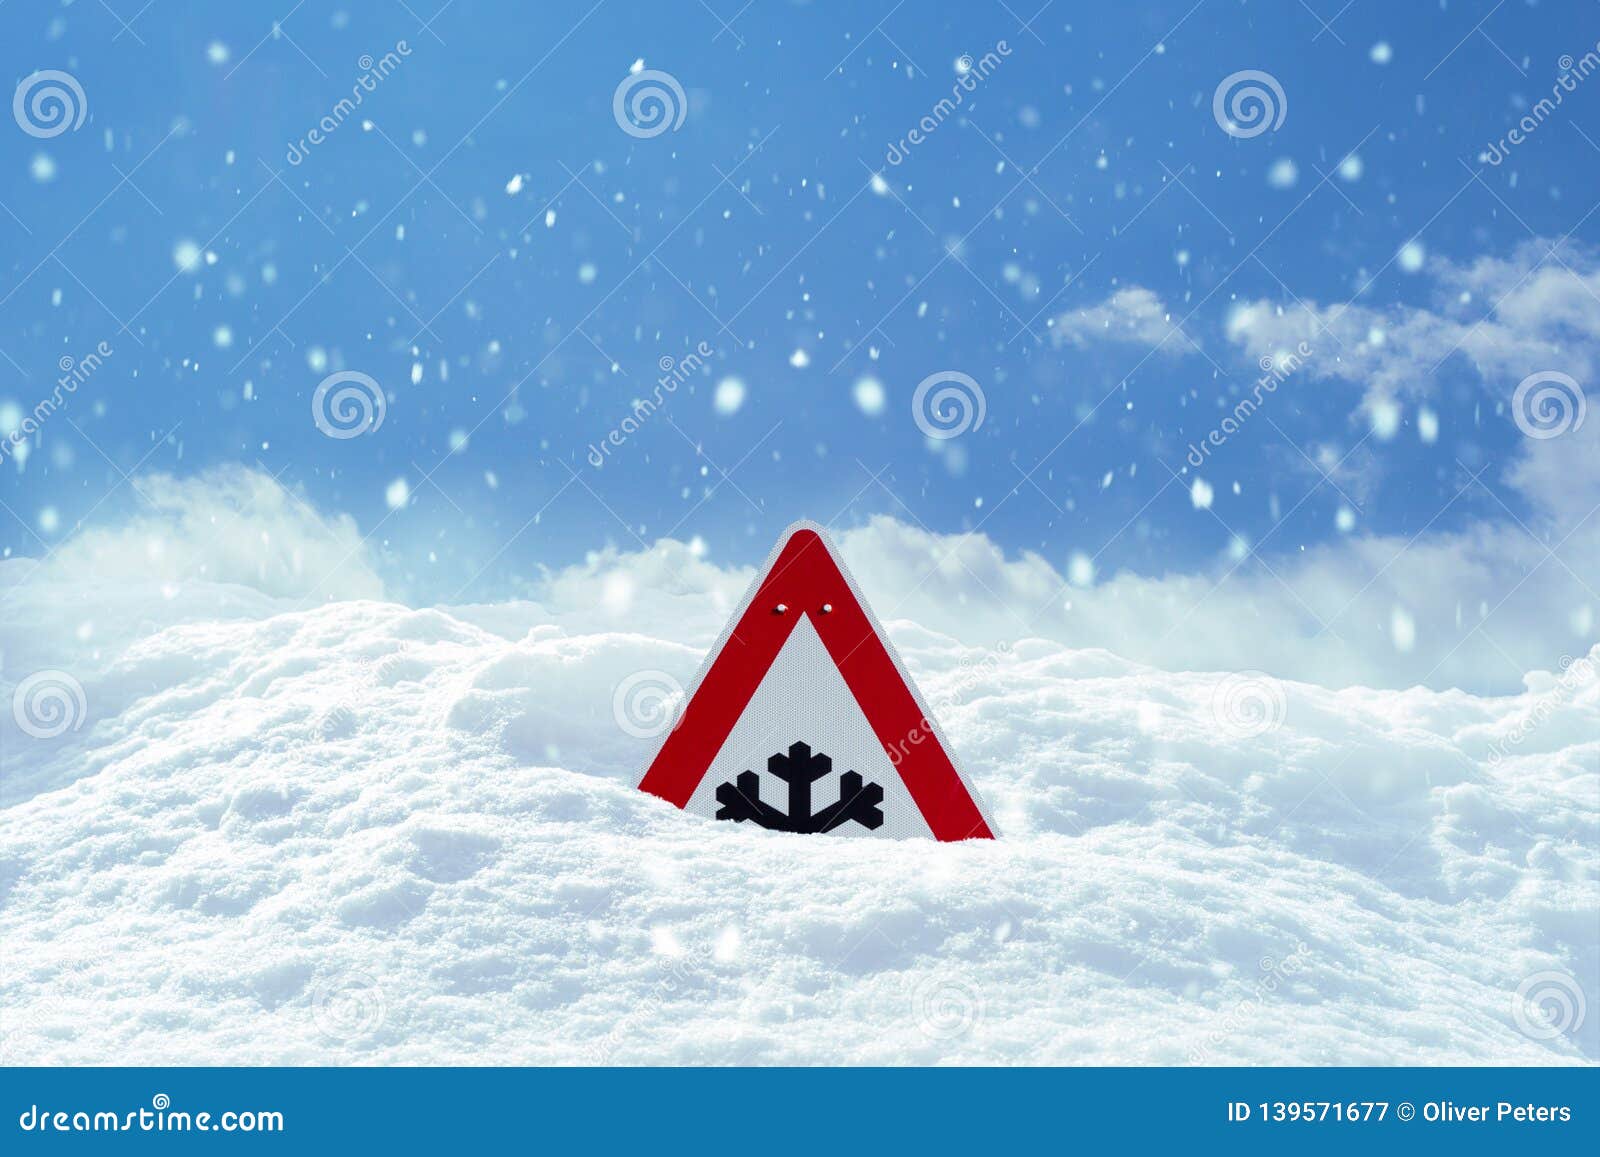 Дорожные знаки снег. Заснеженный дорожный знак. Дорожный знак в снегу. Знак снегопада. Дорожные знаки Снежная лавина.